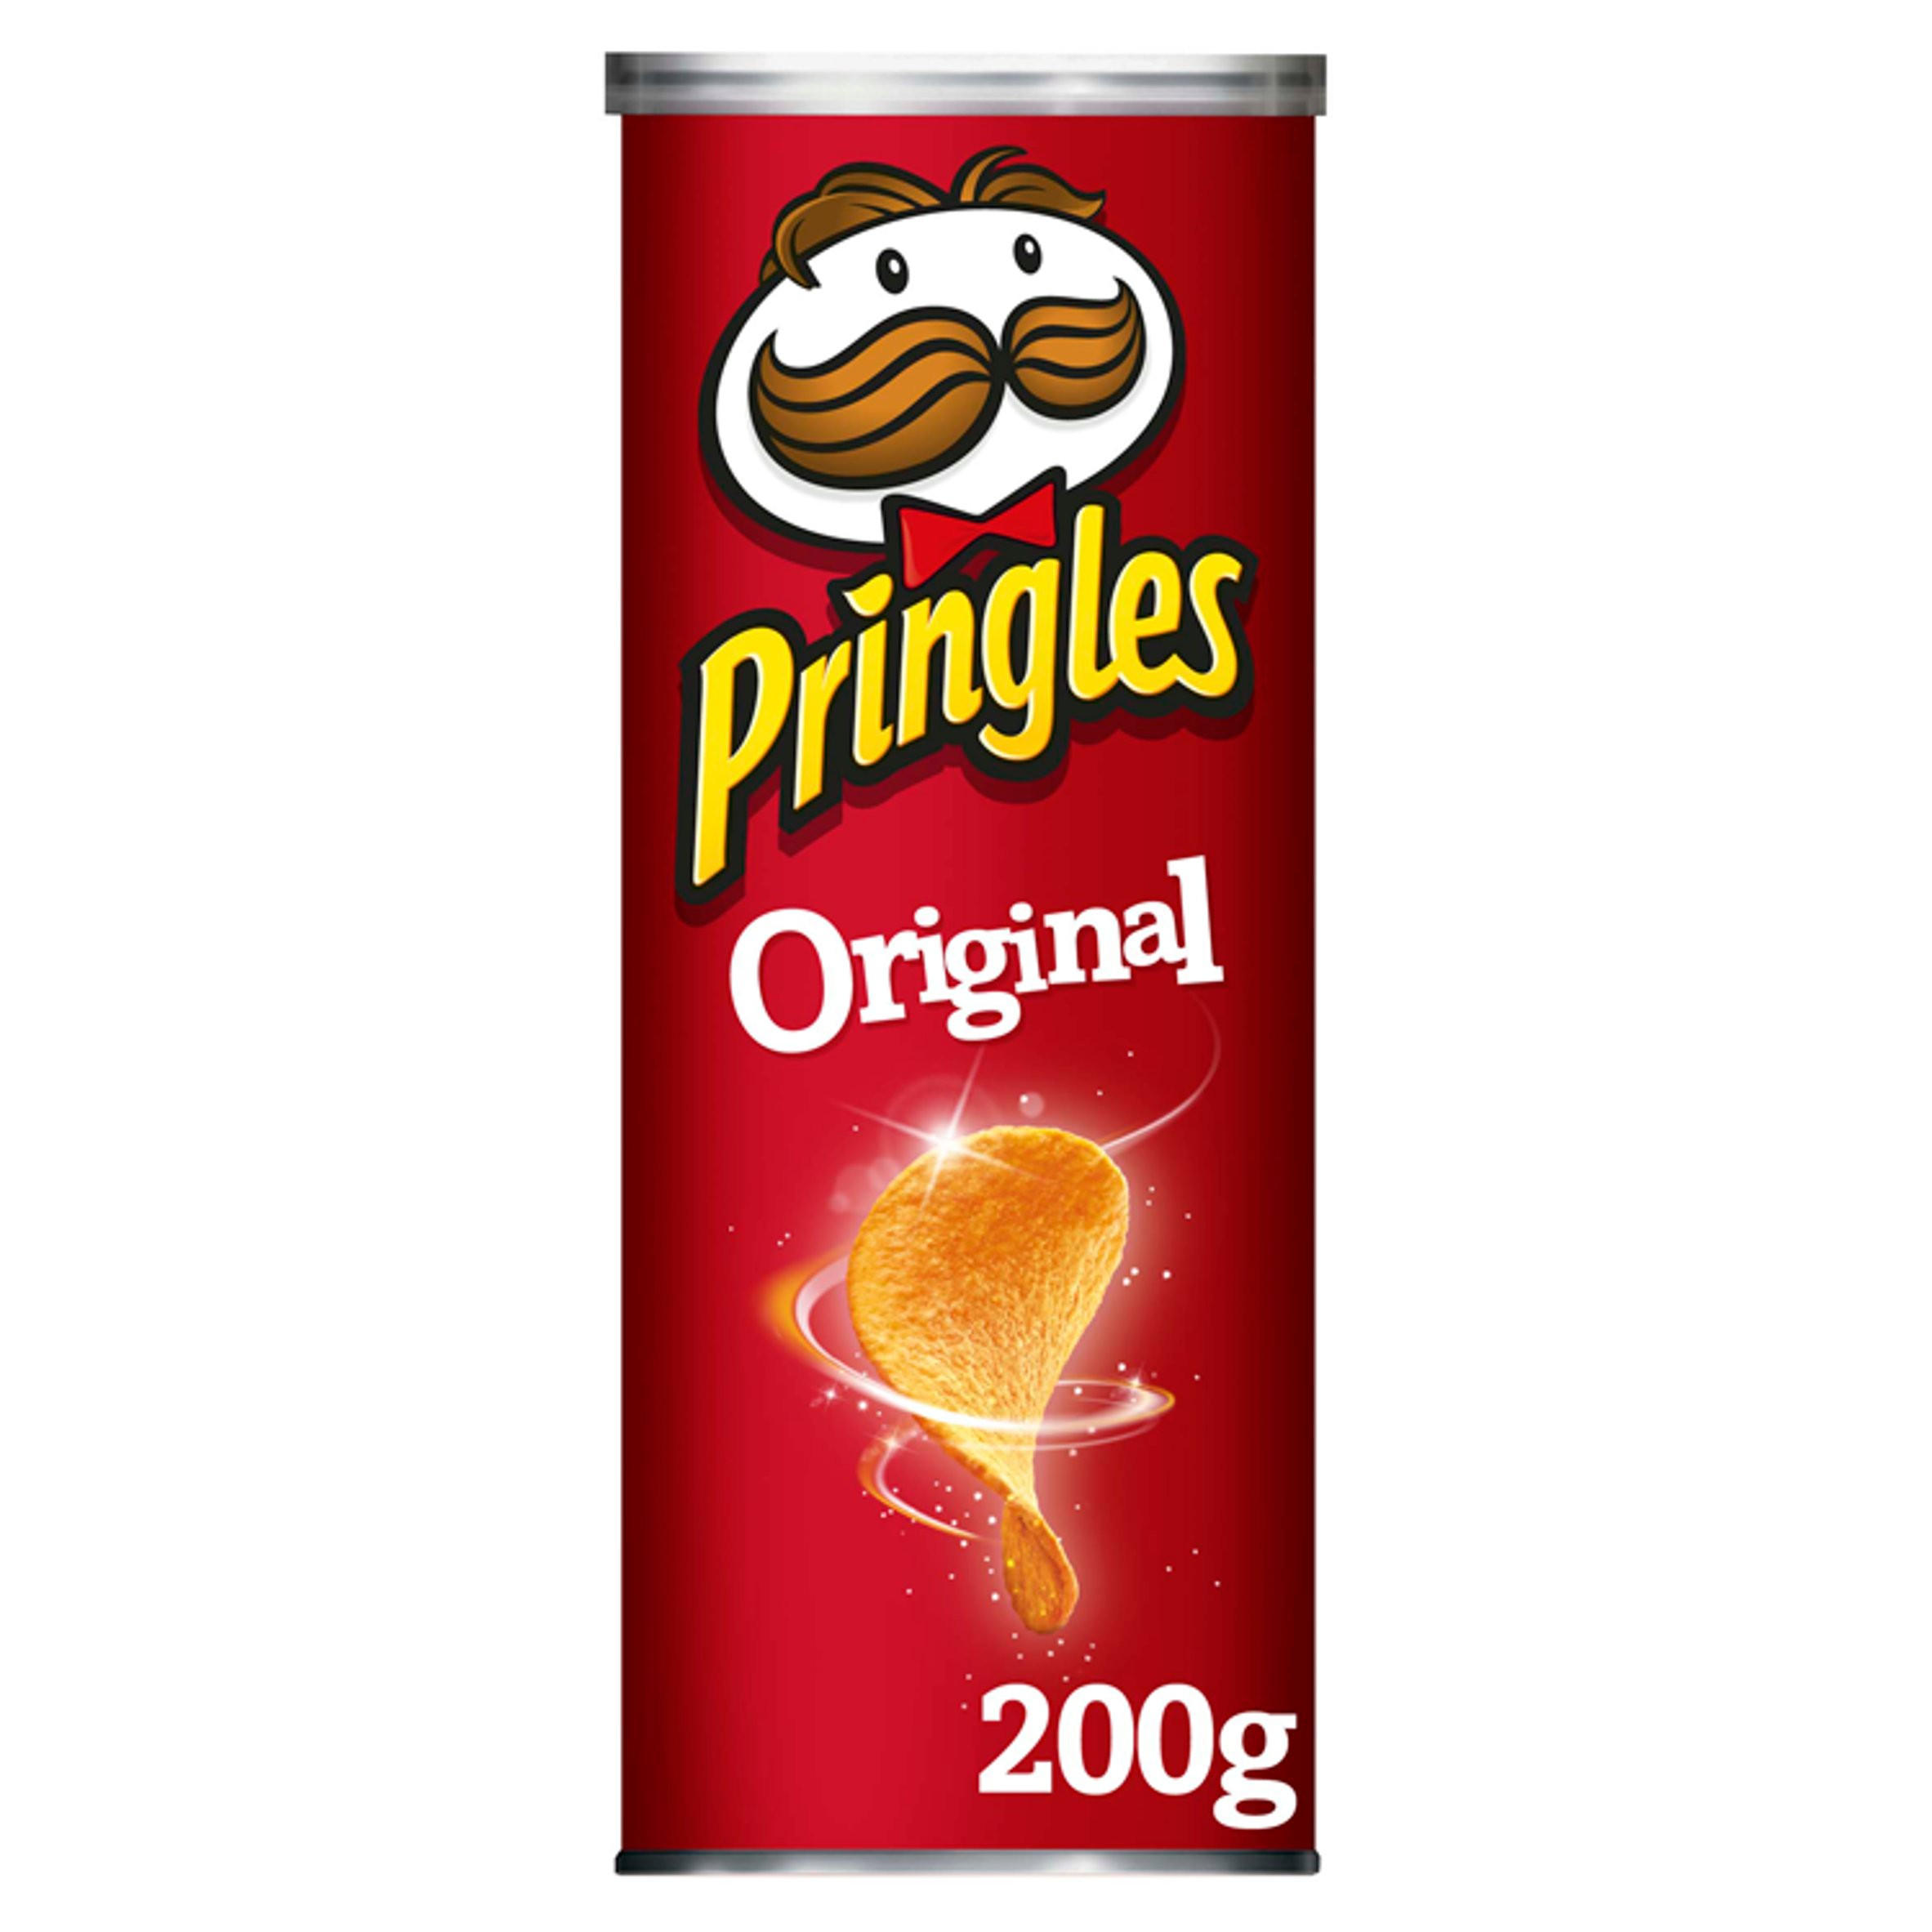 Pringles Original Crisps 200g | Sharing Crisps | Iceland Foods